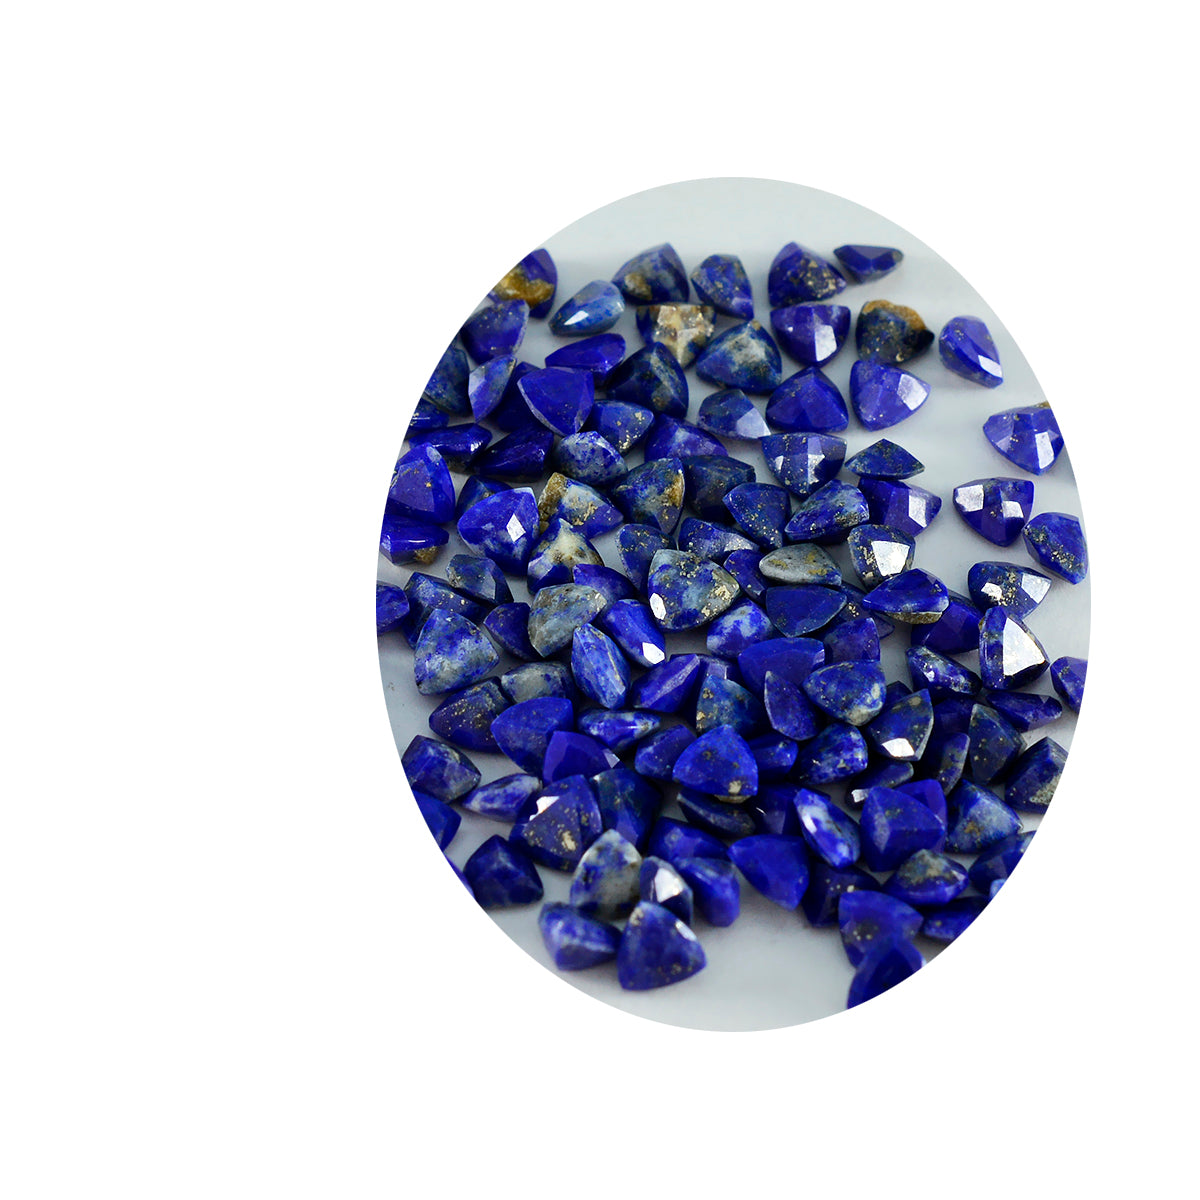 Riyogems 1 Stück echter blauer Lapislazuli, facettiert, 4 x 4 mm, Billionenform, süßer Qualitätsstein